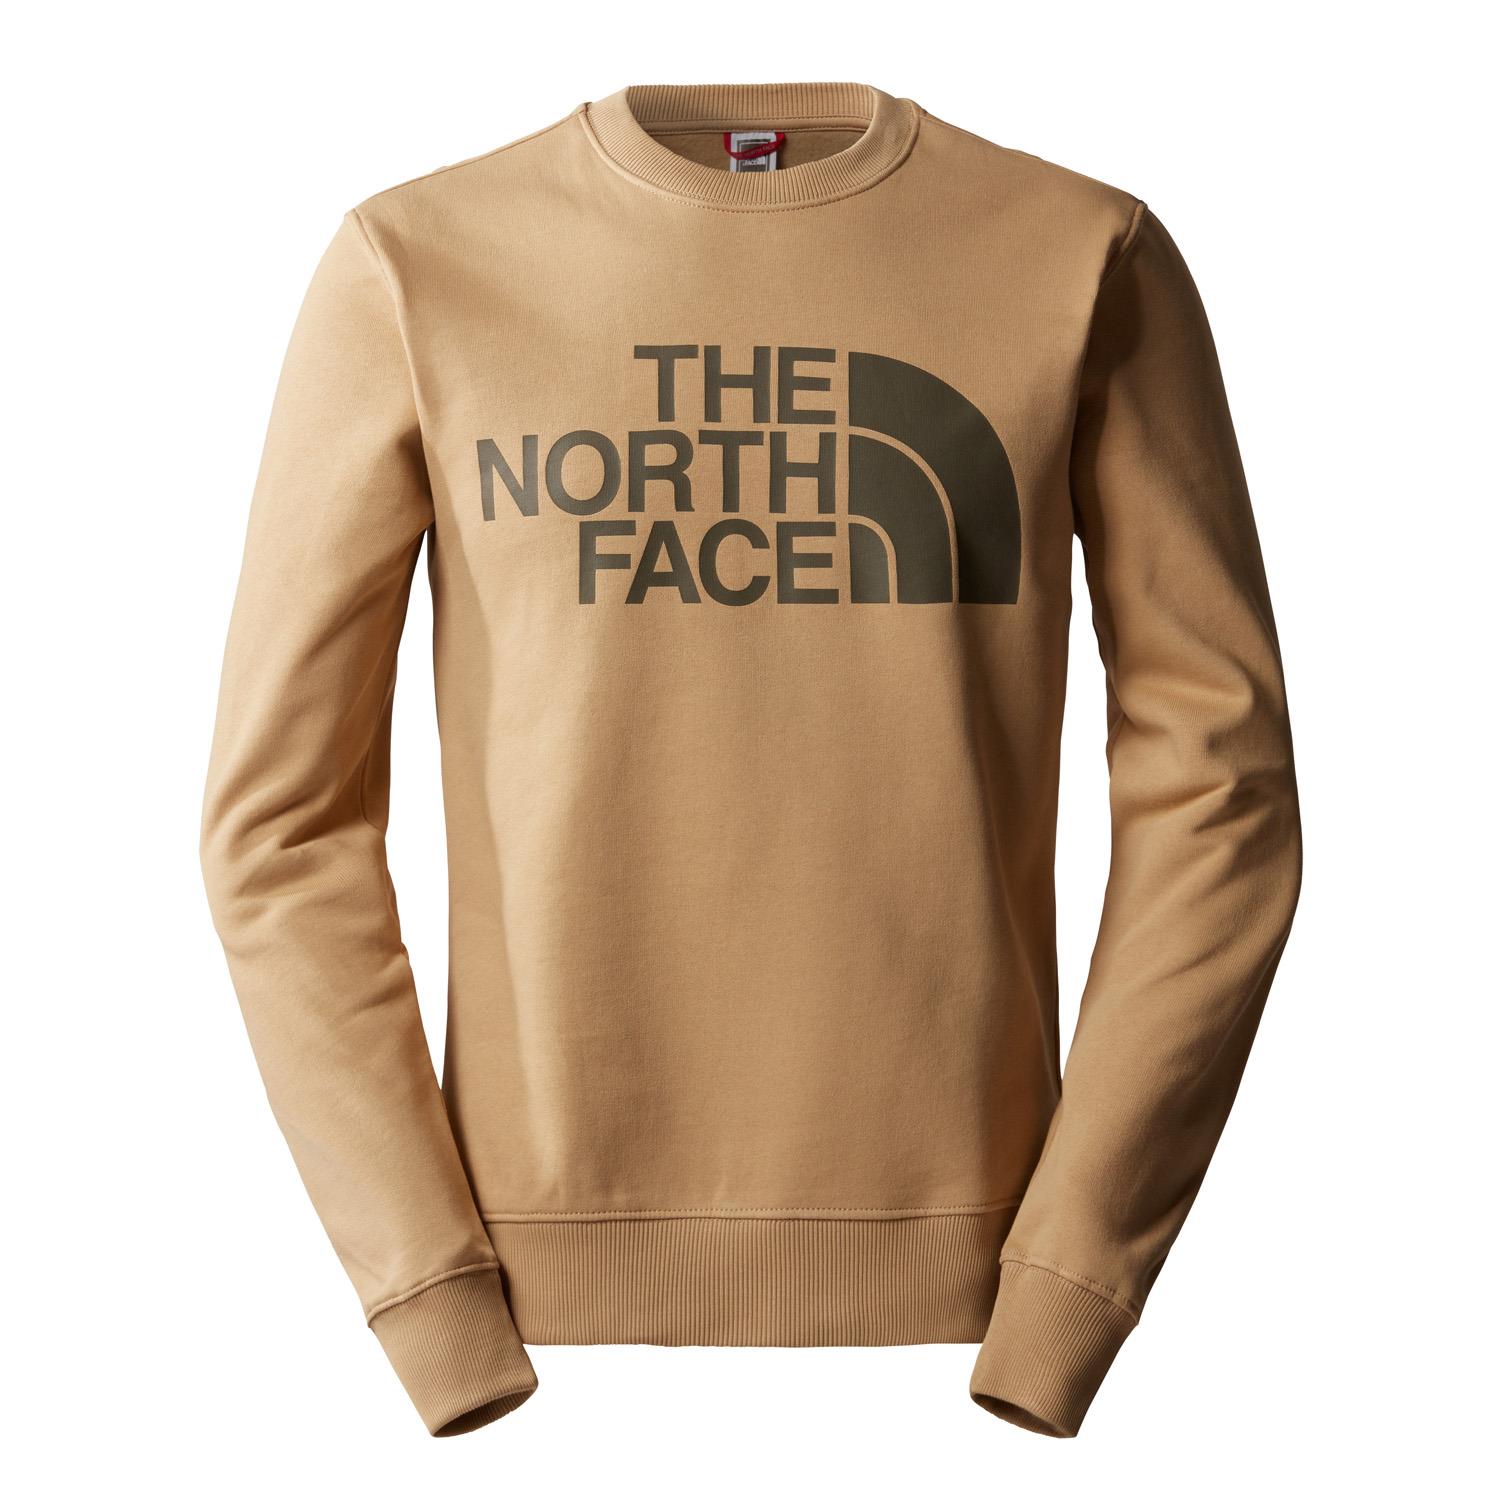  The North Face M STANDARD CREW - EU Erkek Sweatshirt NF0A4M7WLK51